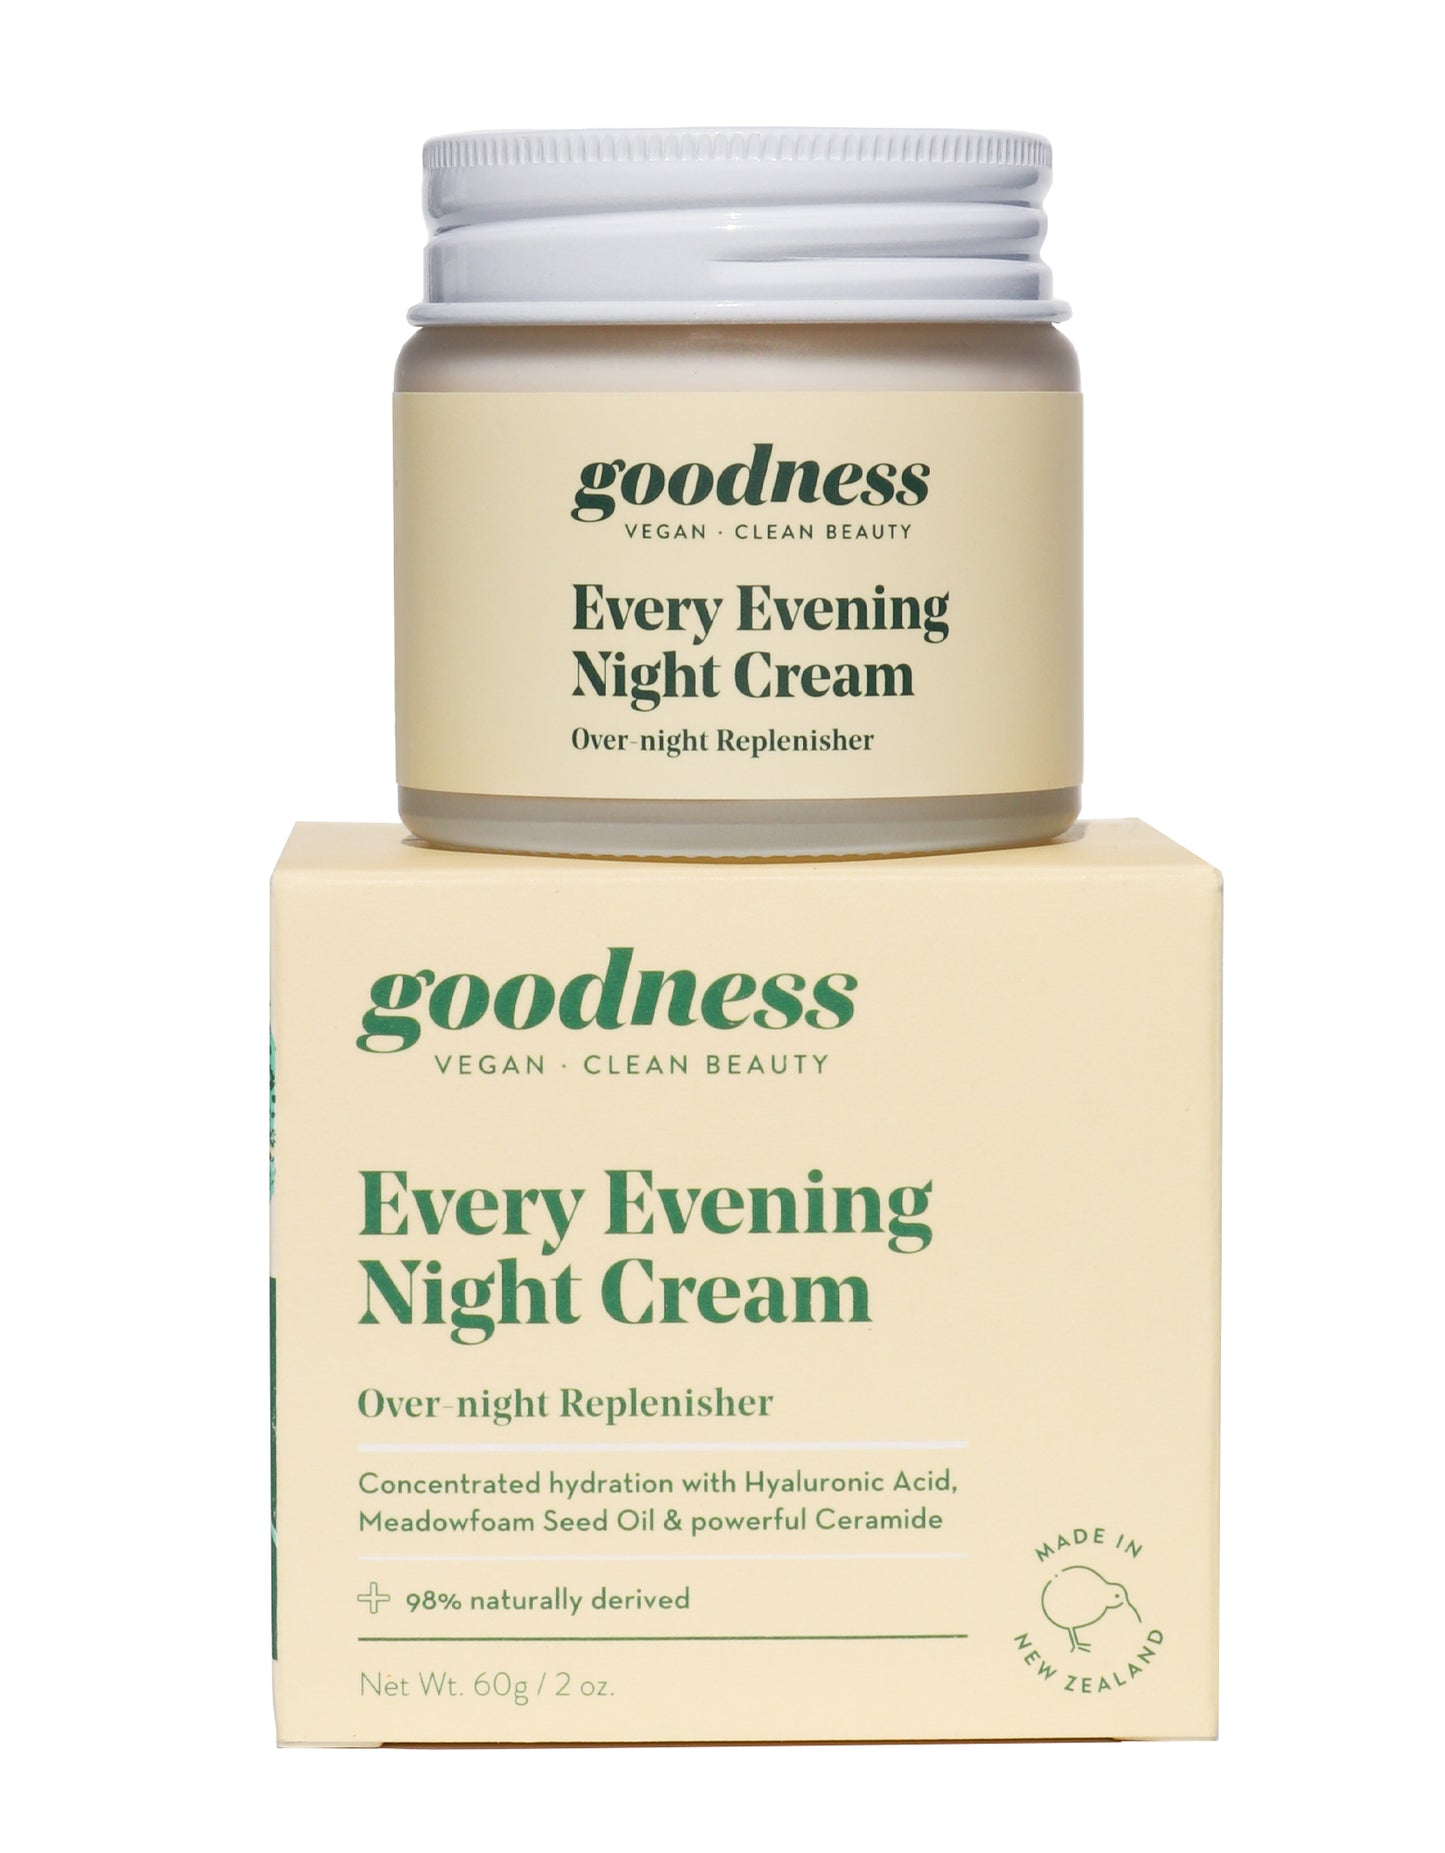 Every Evening Night Cream